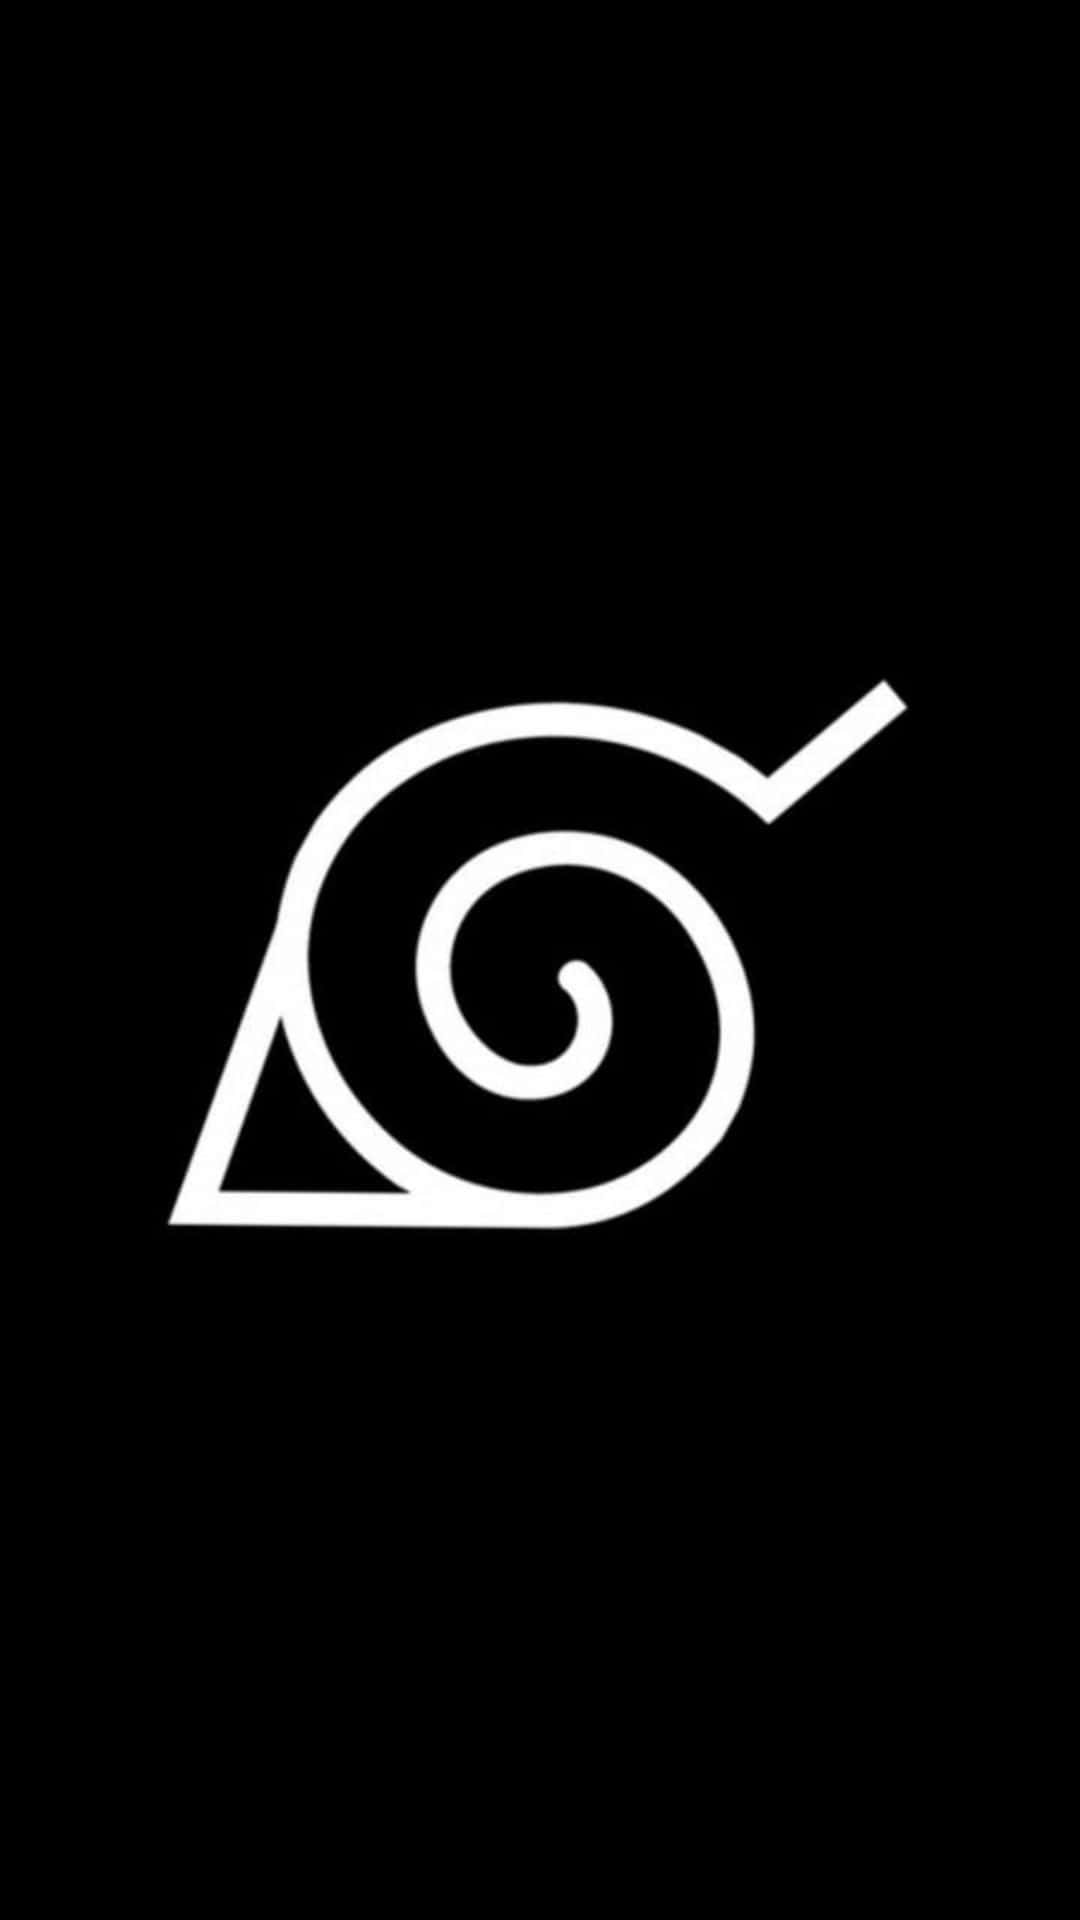 Narutokonoha-logotyp I Svart Och Vitt. Wallpaper